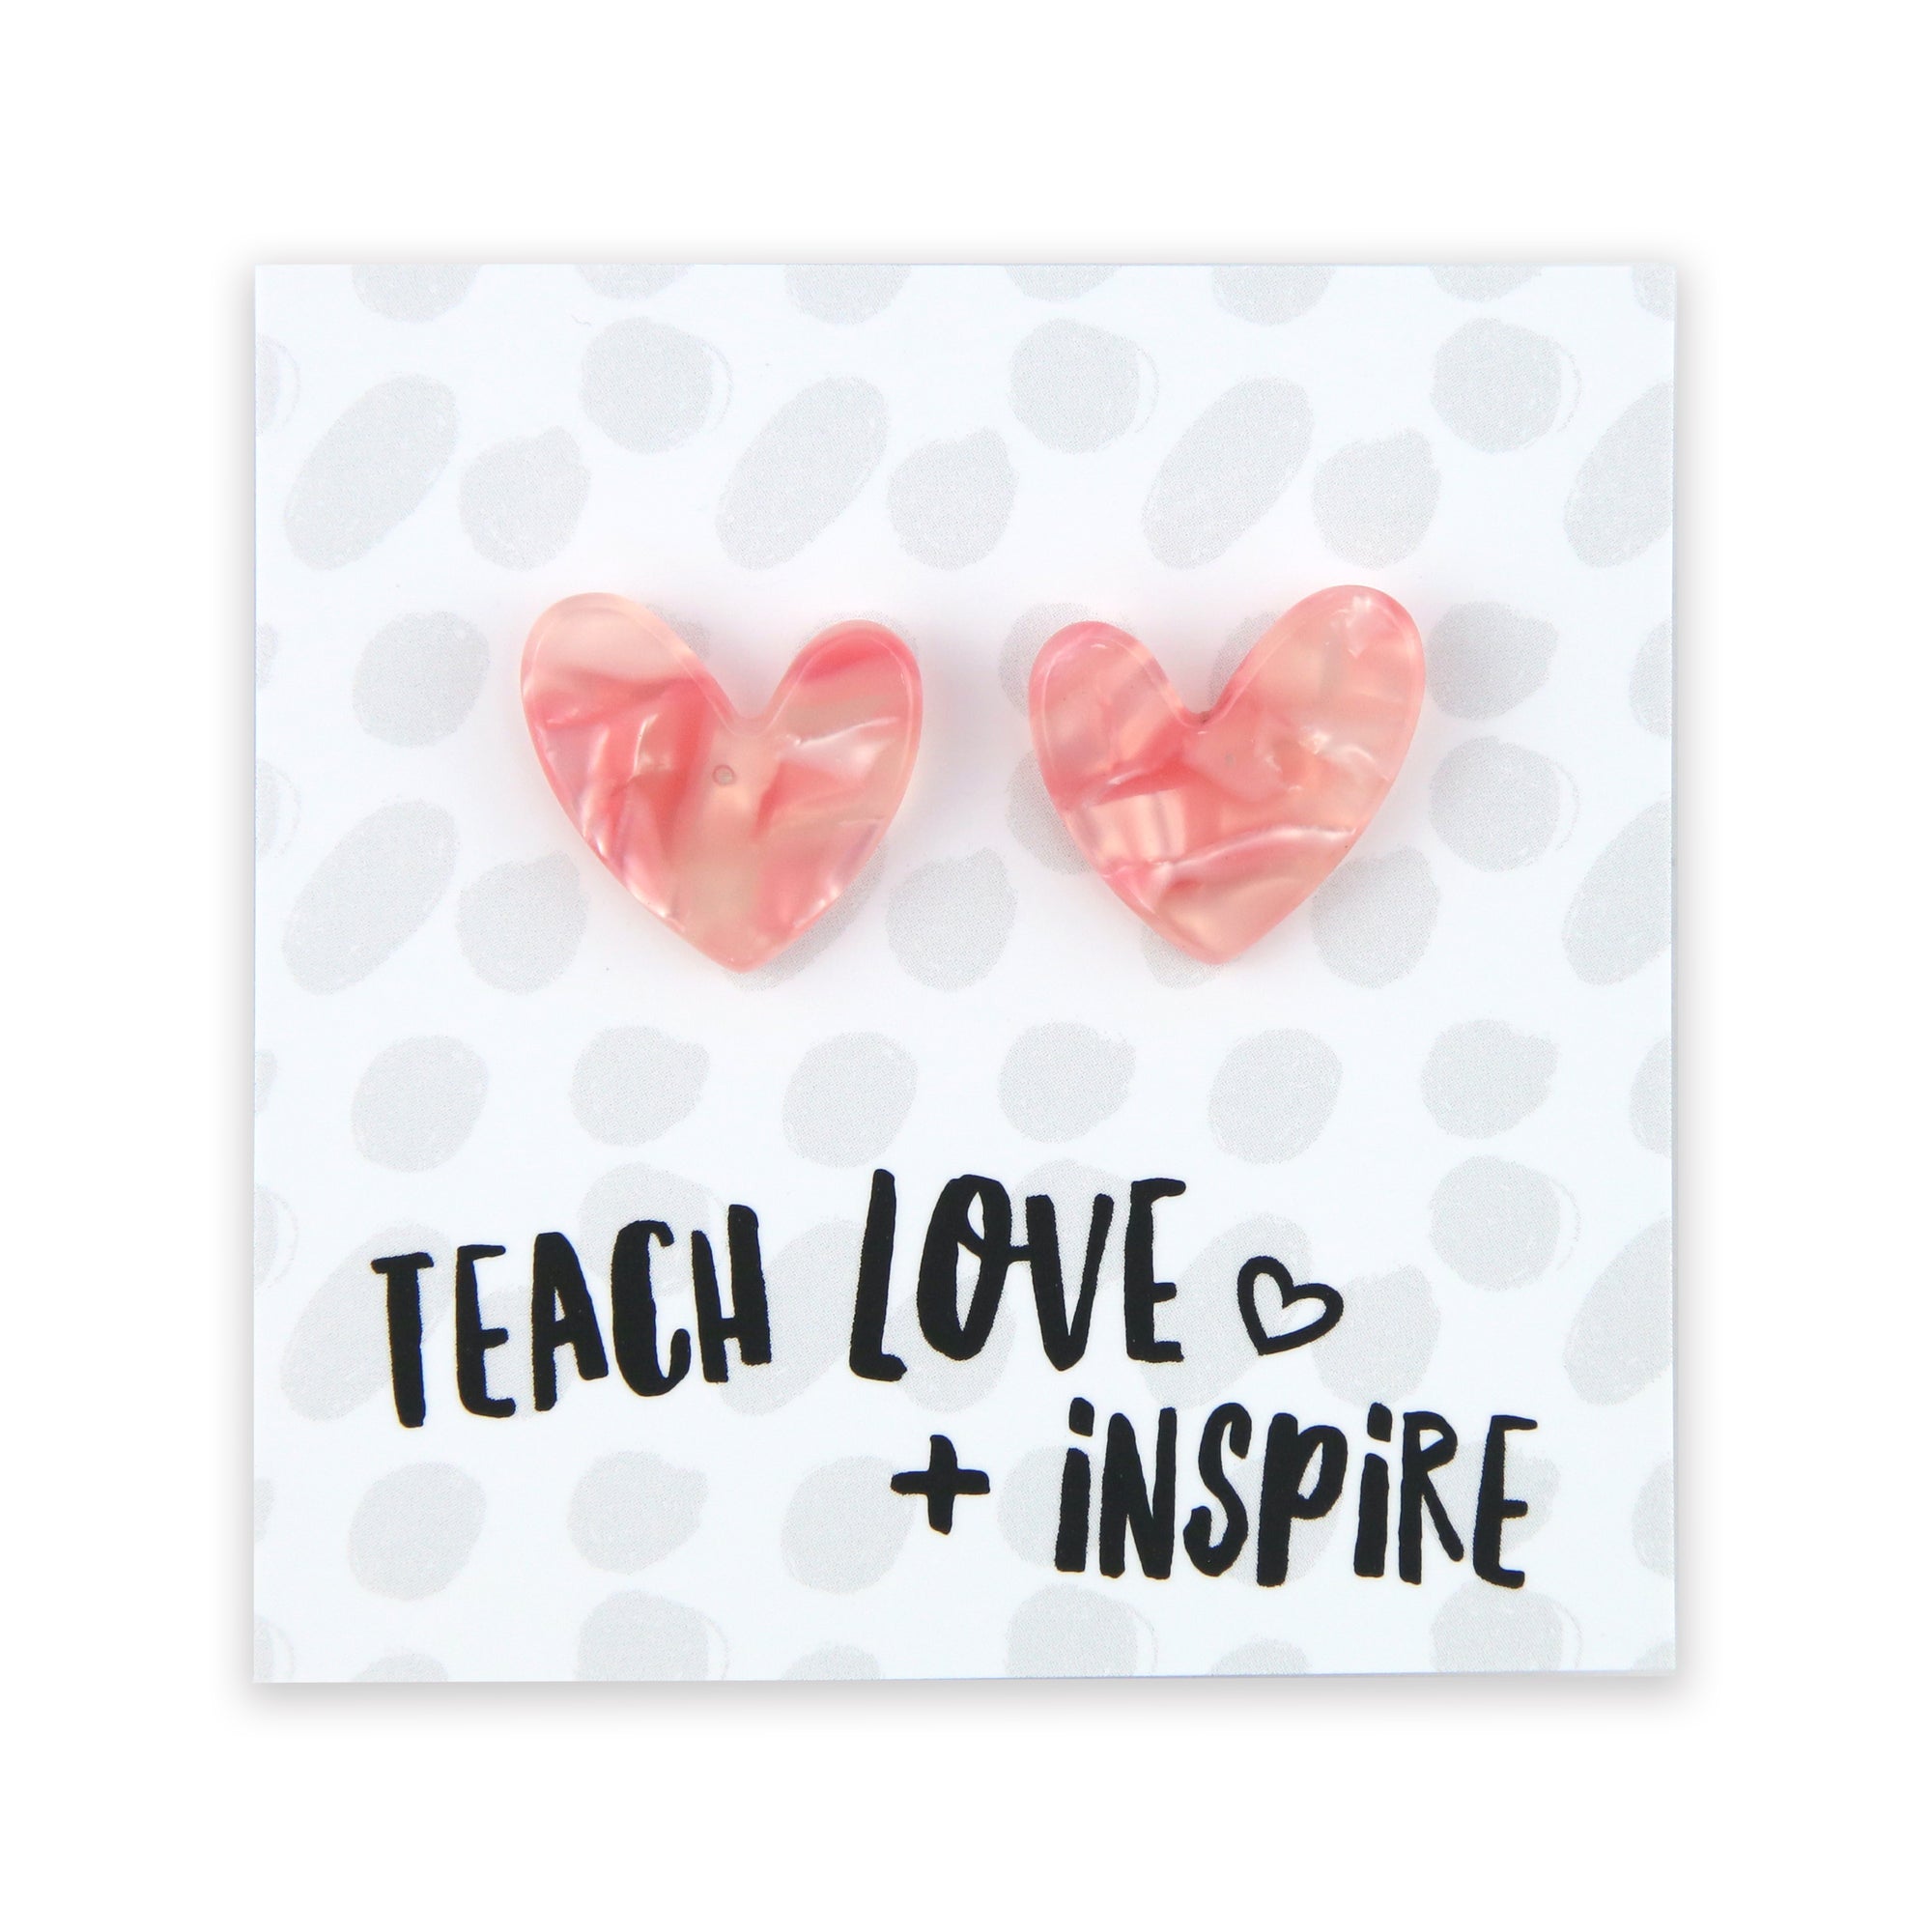 Pinky peach coloured resin heart earrings on Teach, Love Inspire card. 